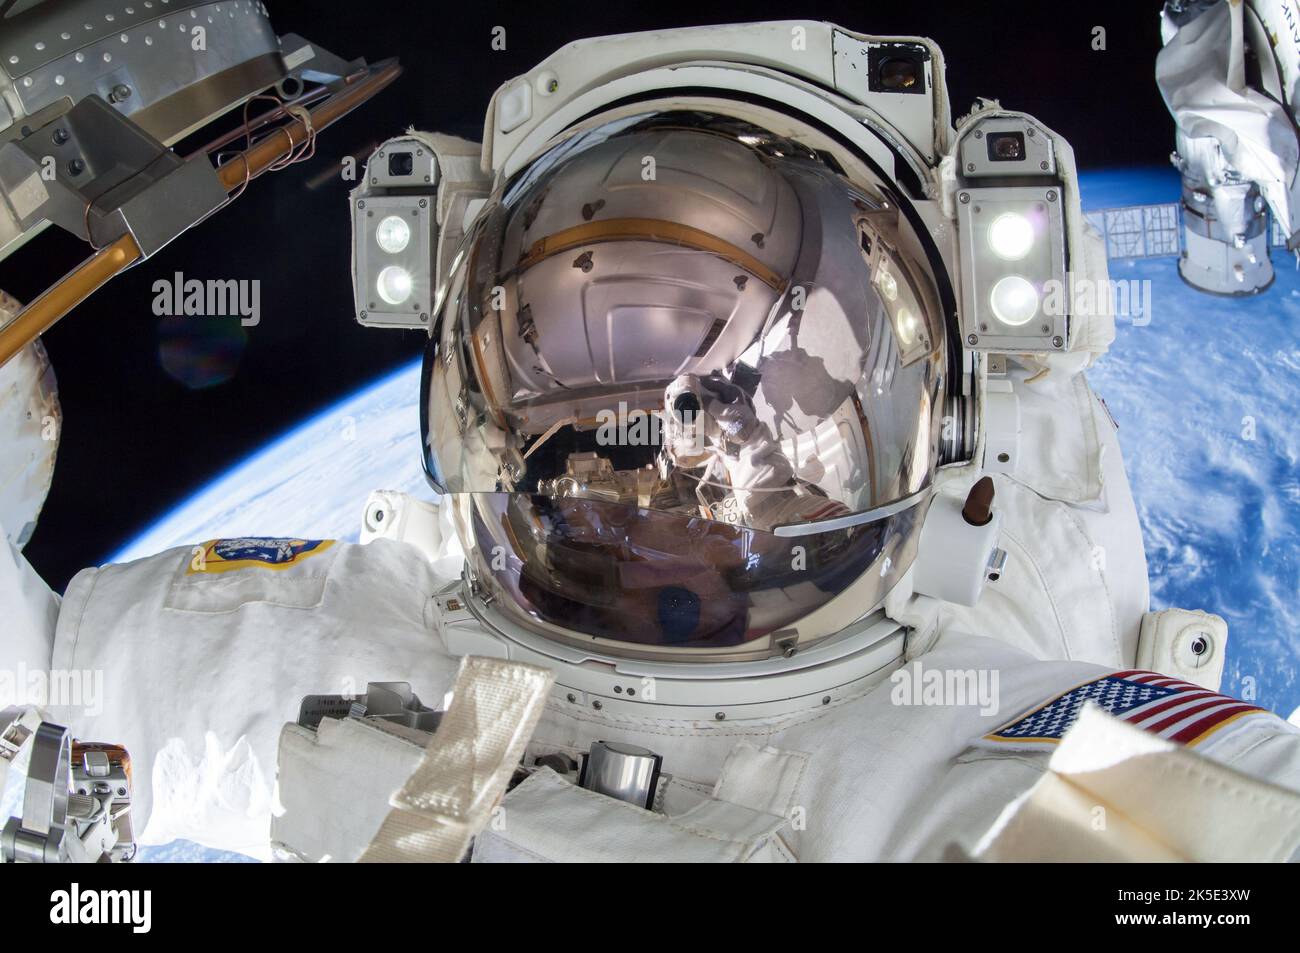 Der US-Astronaut Terry Virts twitterte dieses Bild seinen Anhängern am 1. März 2015, nachdem er mit seinem Partner Barry 'Butch' Wilmore eine Reihe von Spacewalks absolviert hatte, um die Internationale Raumstation auf die bevorstehende kommerzielle US-Raumsonde vorzubereiten, die sich derzeit in der Entwicklung befindet. Virts kommentierte den Tweet: „Mission erfüllt - 3 Spacewalks, 800 Fuß Kabel, 4 Antennen, 3 Laserreflektoren, 1 gefettete Roboterarme.“ Eine optimierte Version eines NASA-Bildes. Quelle: NASA/ T.Virts. - Nutzungsbeschränkungen: Nur für redaktionelle Zwecke. Nicht als Billigung dargestellt werden. Stockfoto